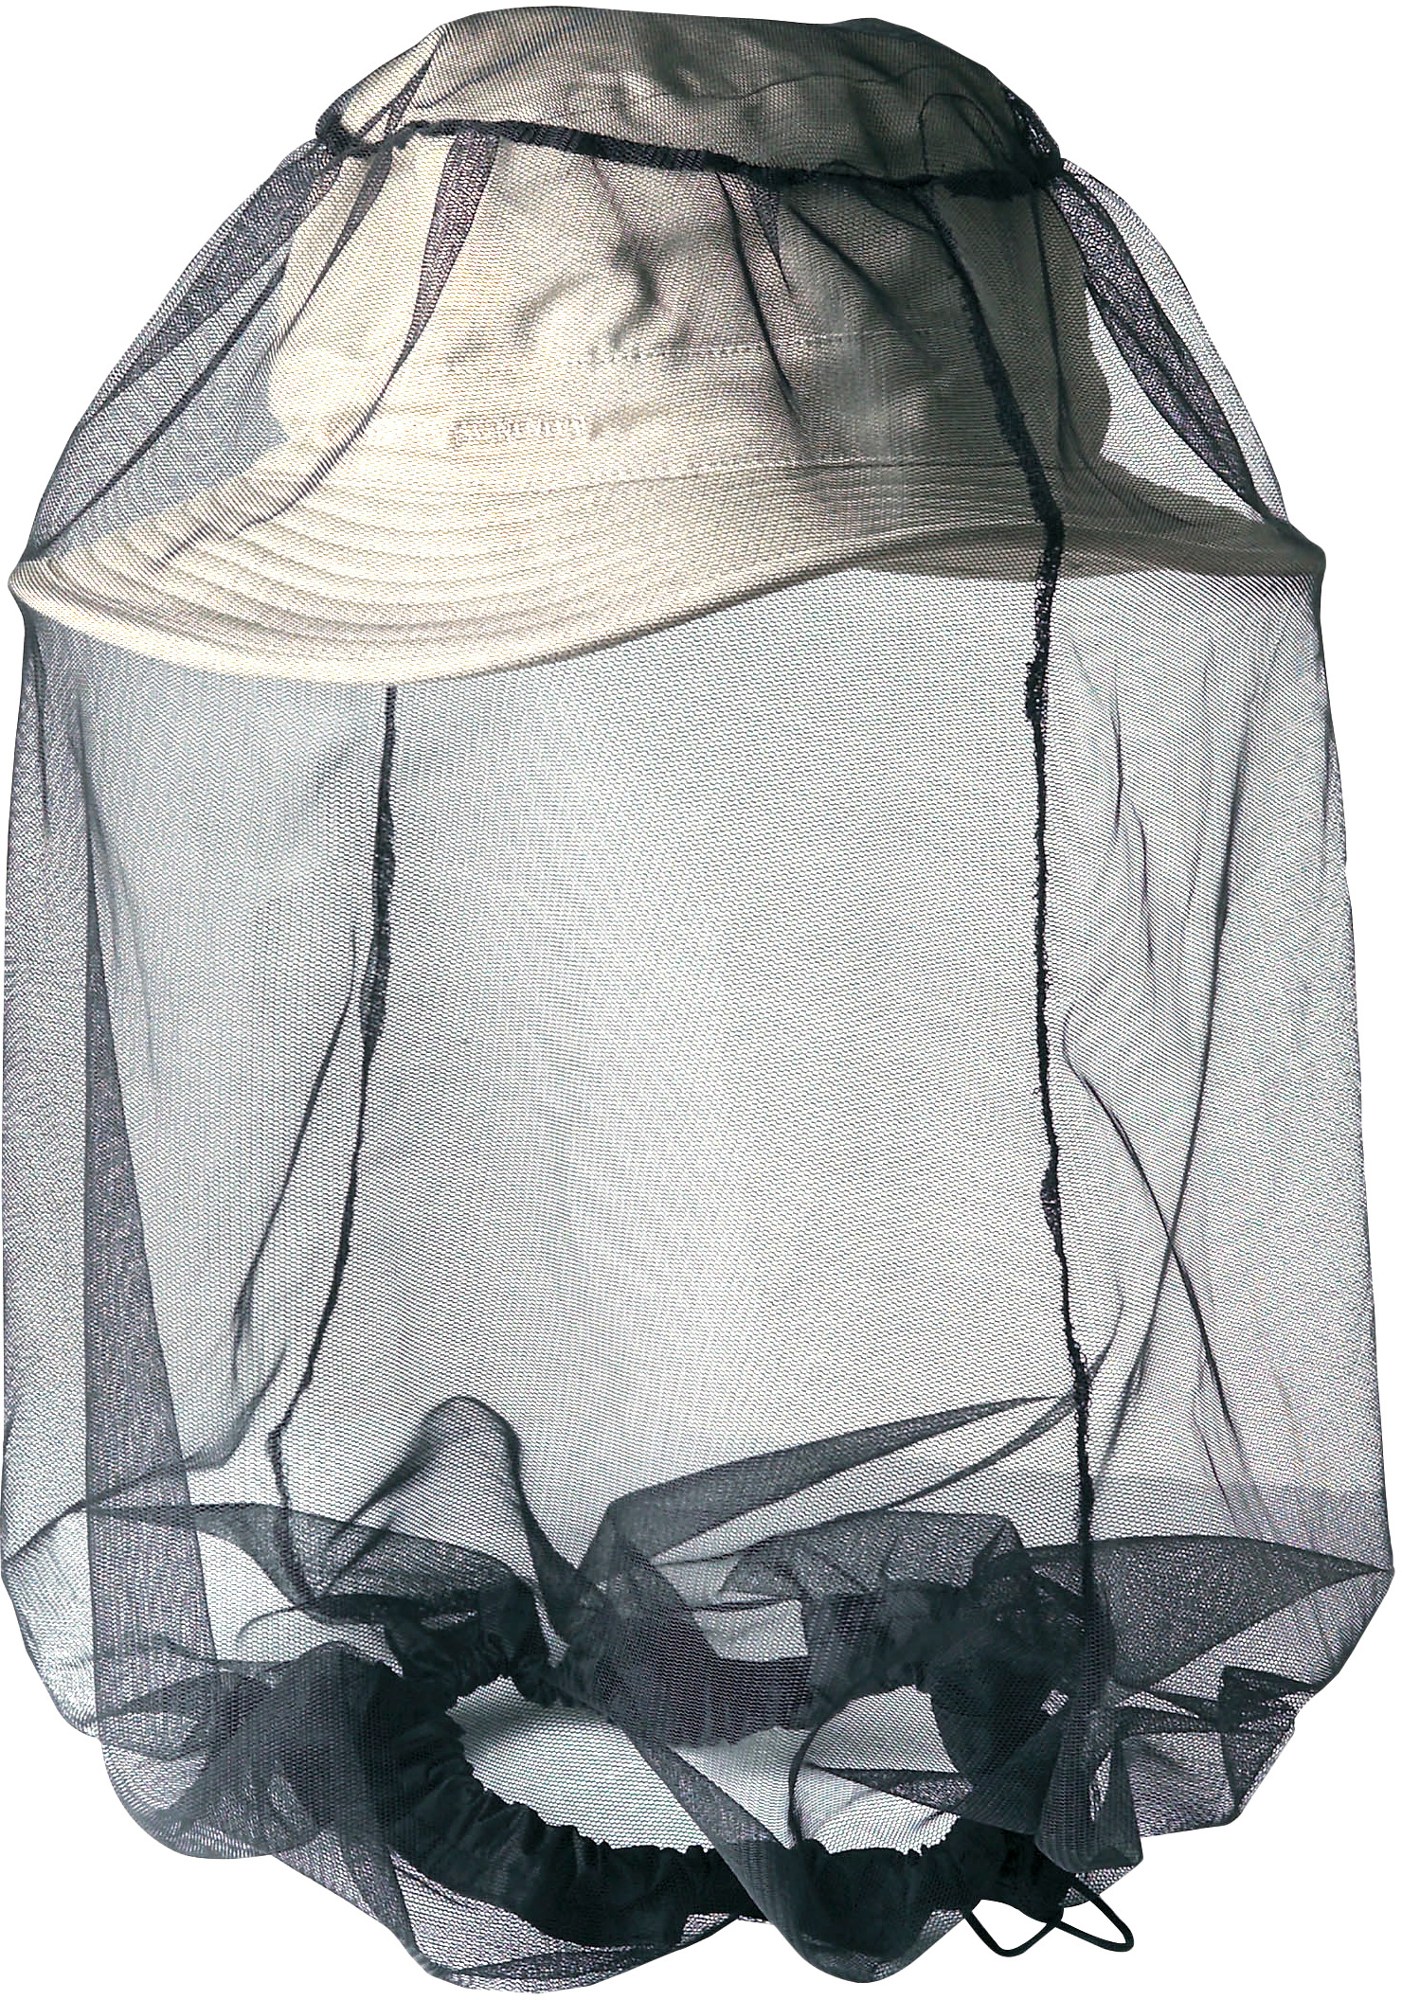 Москитная сетка для головы с защитой от насекомых Sea to Summit москитная сетка на люльку coast insect cover carry cot